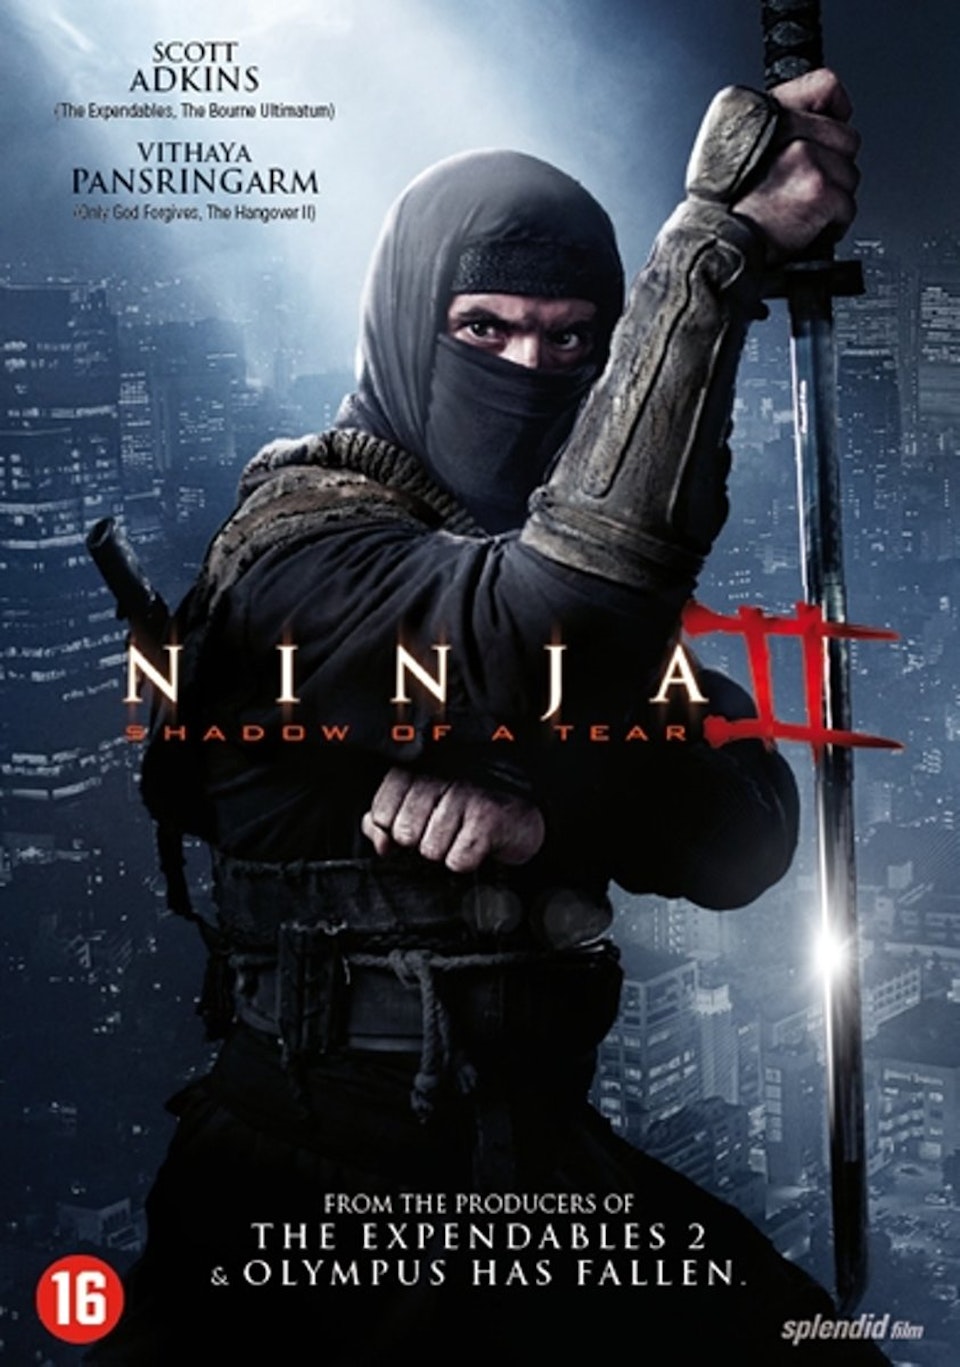 Ninja II: Shadow of a Tear | trailer US (2013)